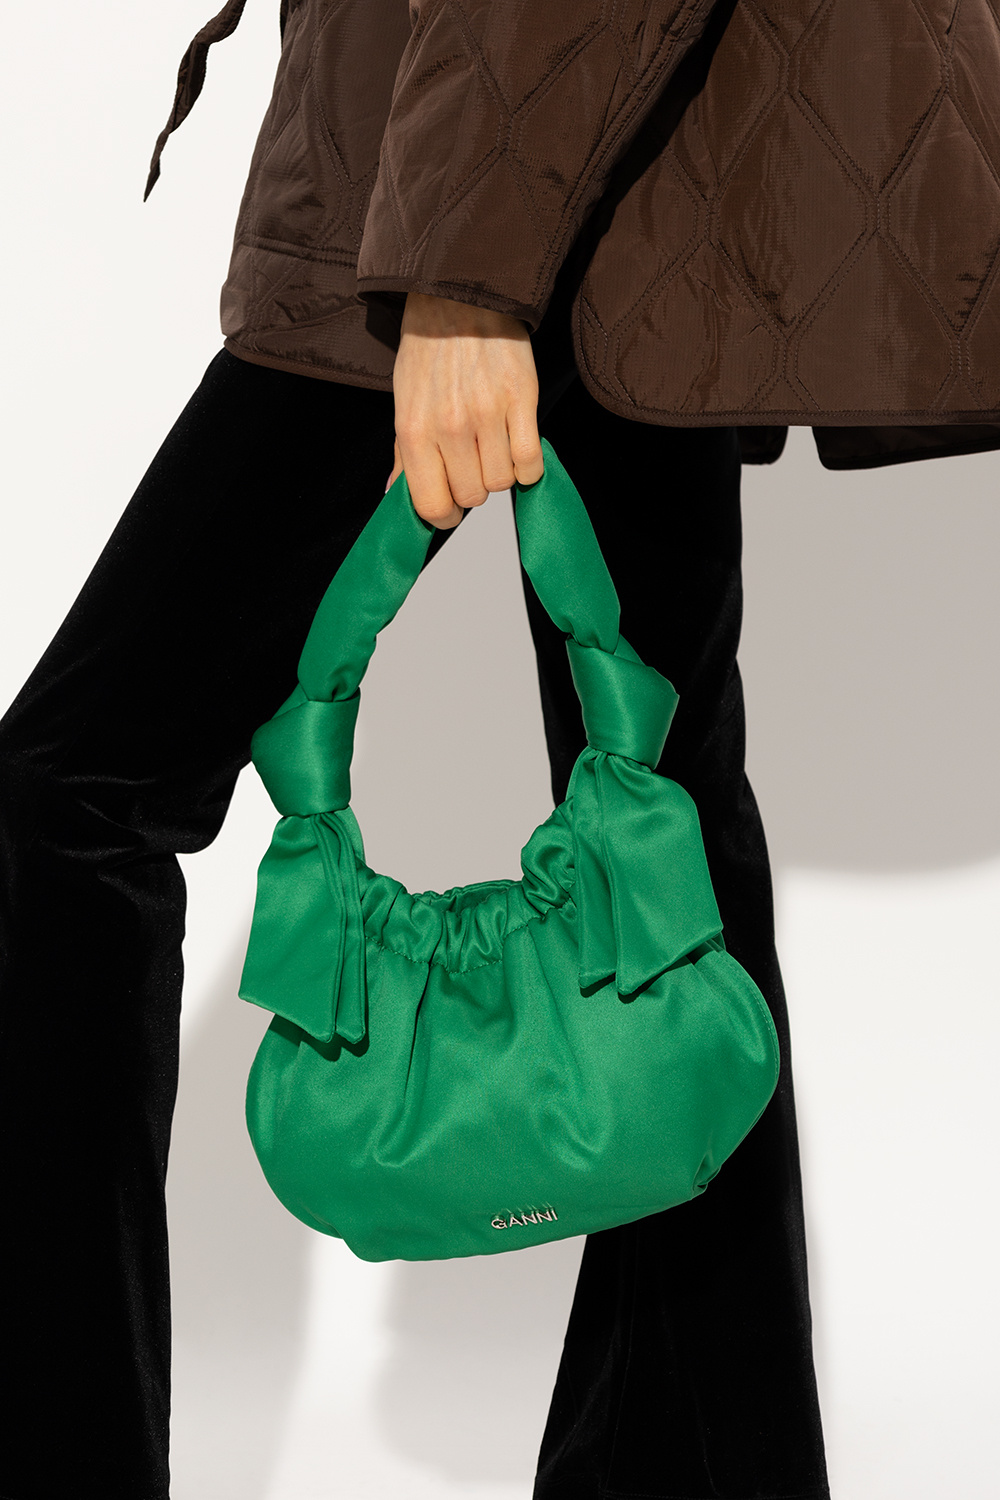 Ganni Chanel Mini WOC Bag